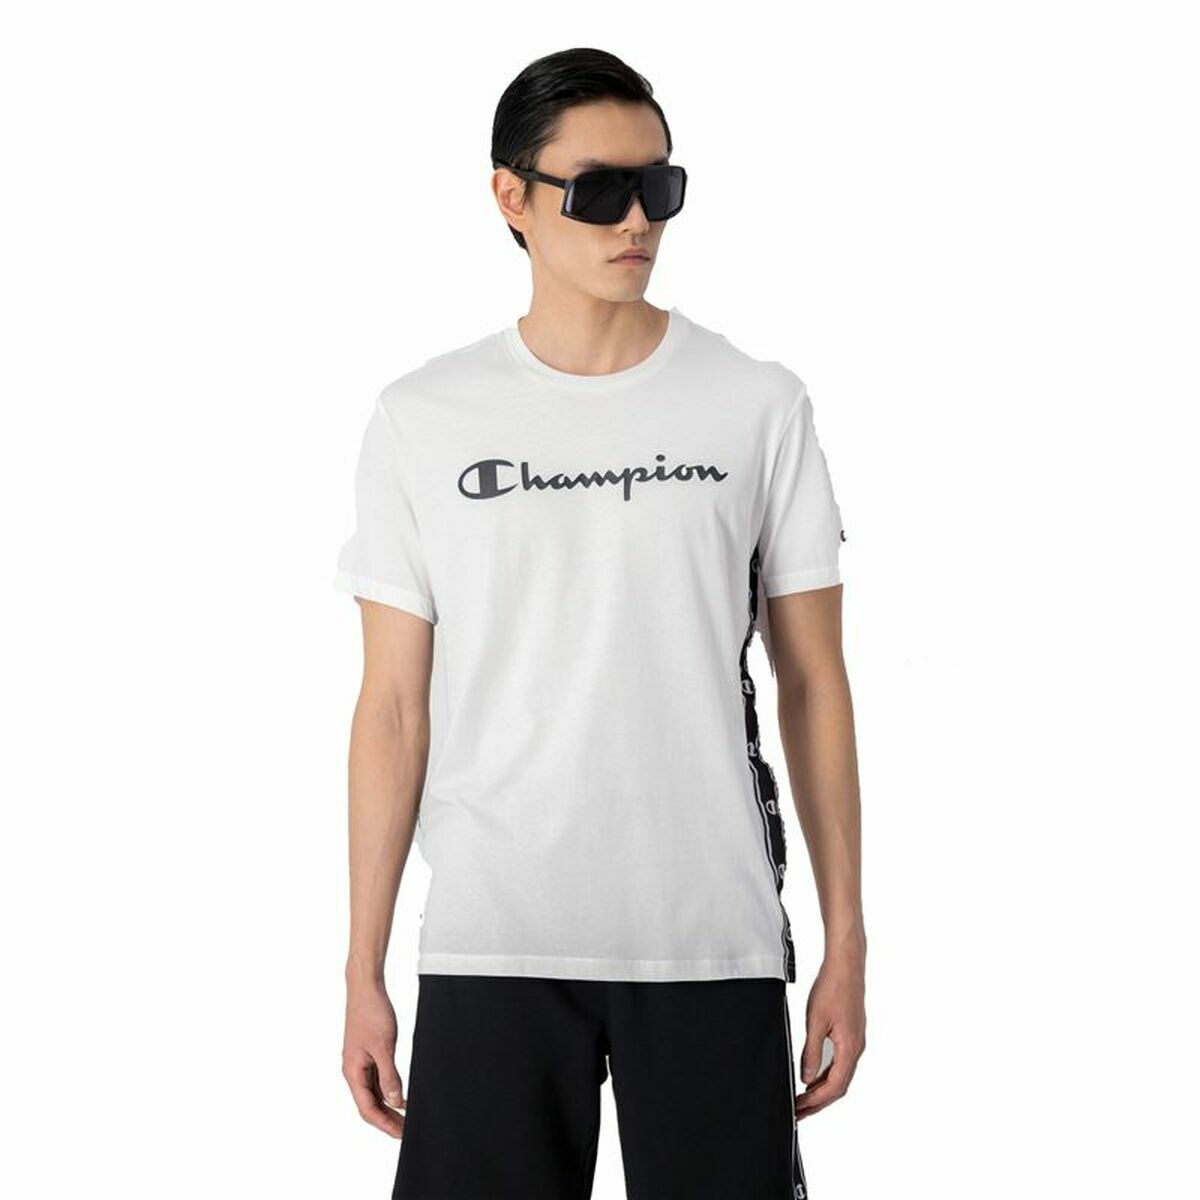 Herren Kurzarm-T-Shirt Champion Crewneck Weiß